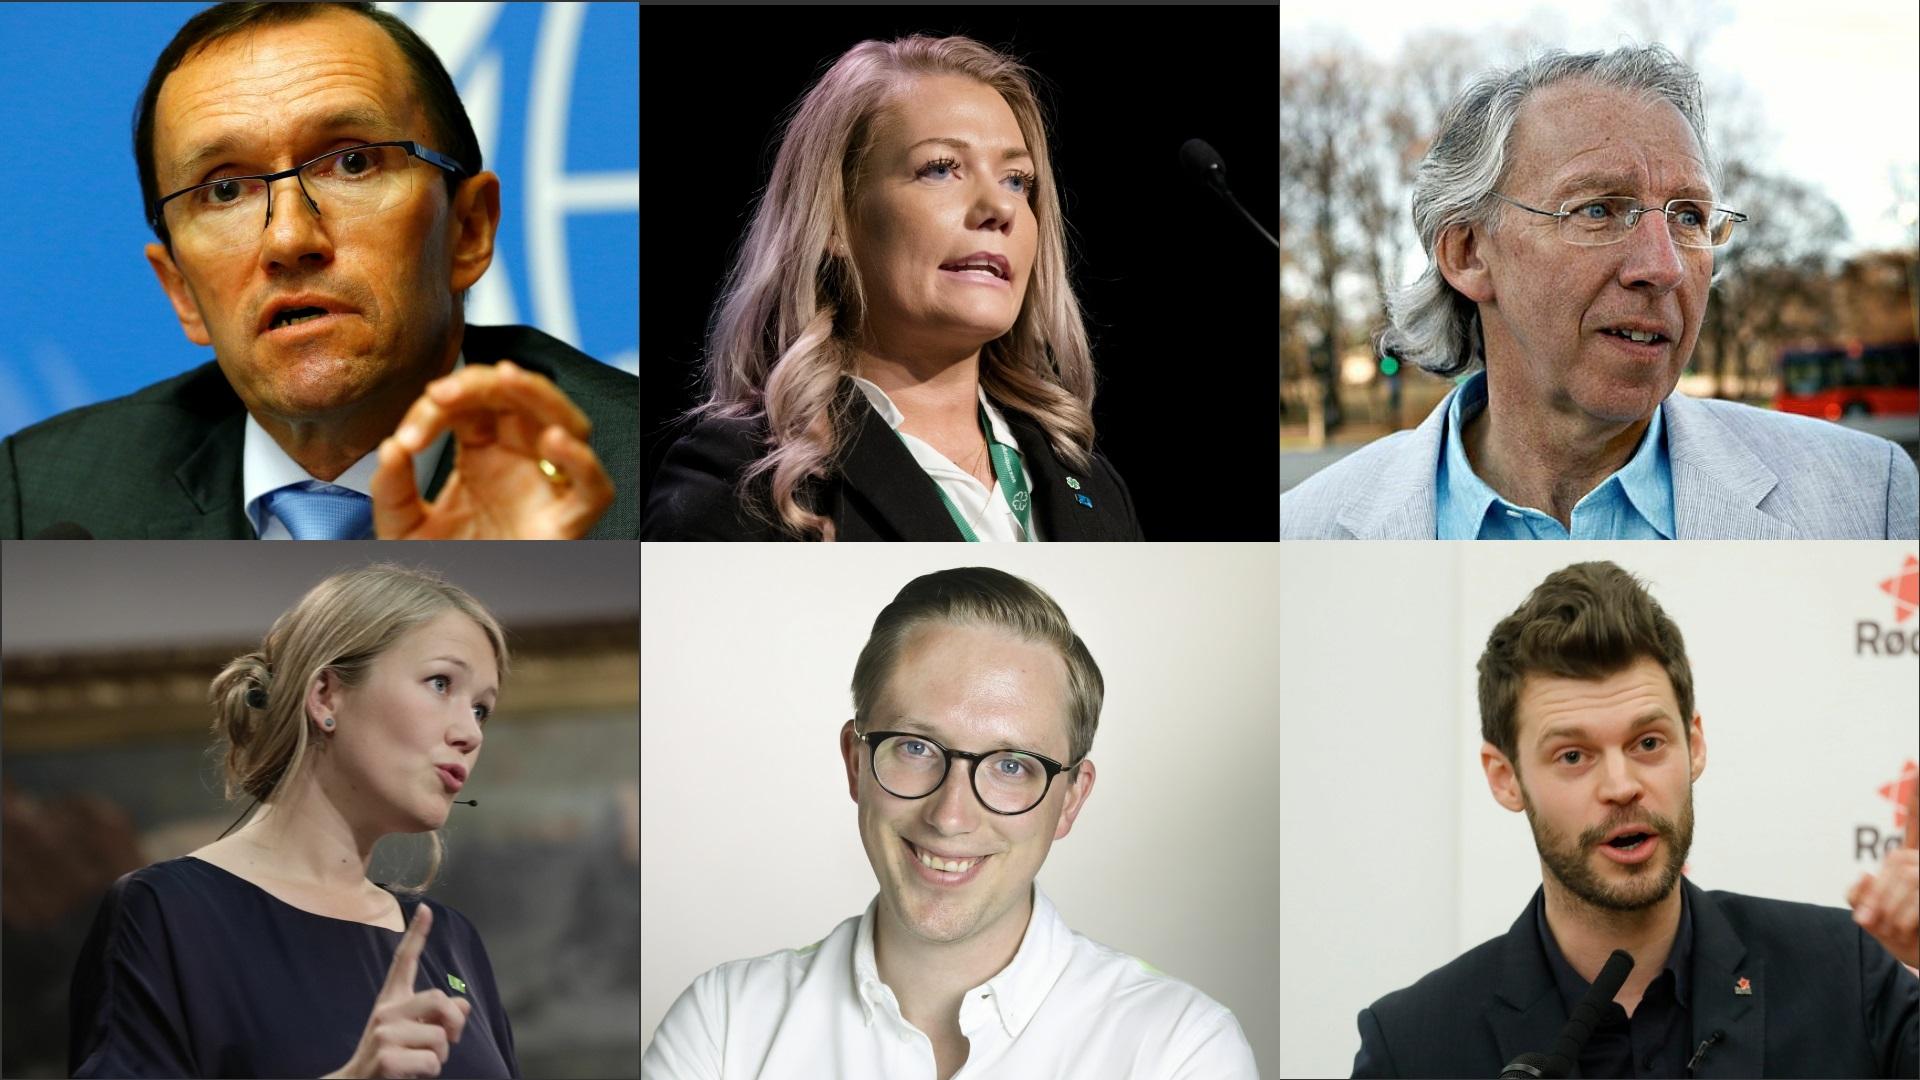  Dette er noen av de nye ansiktene på Stortinget. Øverst (f.v.): Espen Barth Eide (Ap), Sandra Borch (Sp), Carl-Erik Grimstad (V). Nederst (f.v.): Una Aina Bastholm (MDG), Kristian Tonning Riise (H), Bjørnar Moxnes (R).